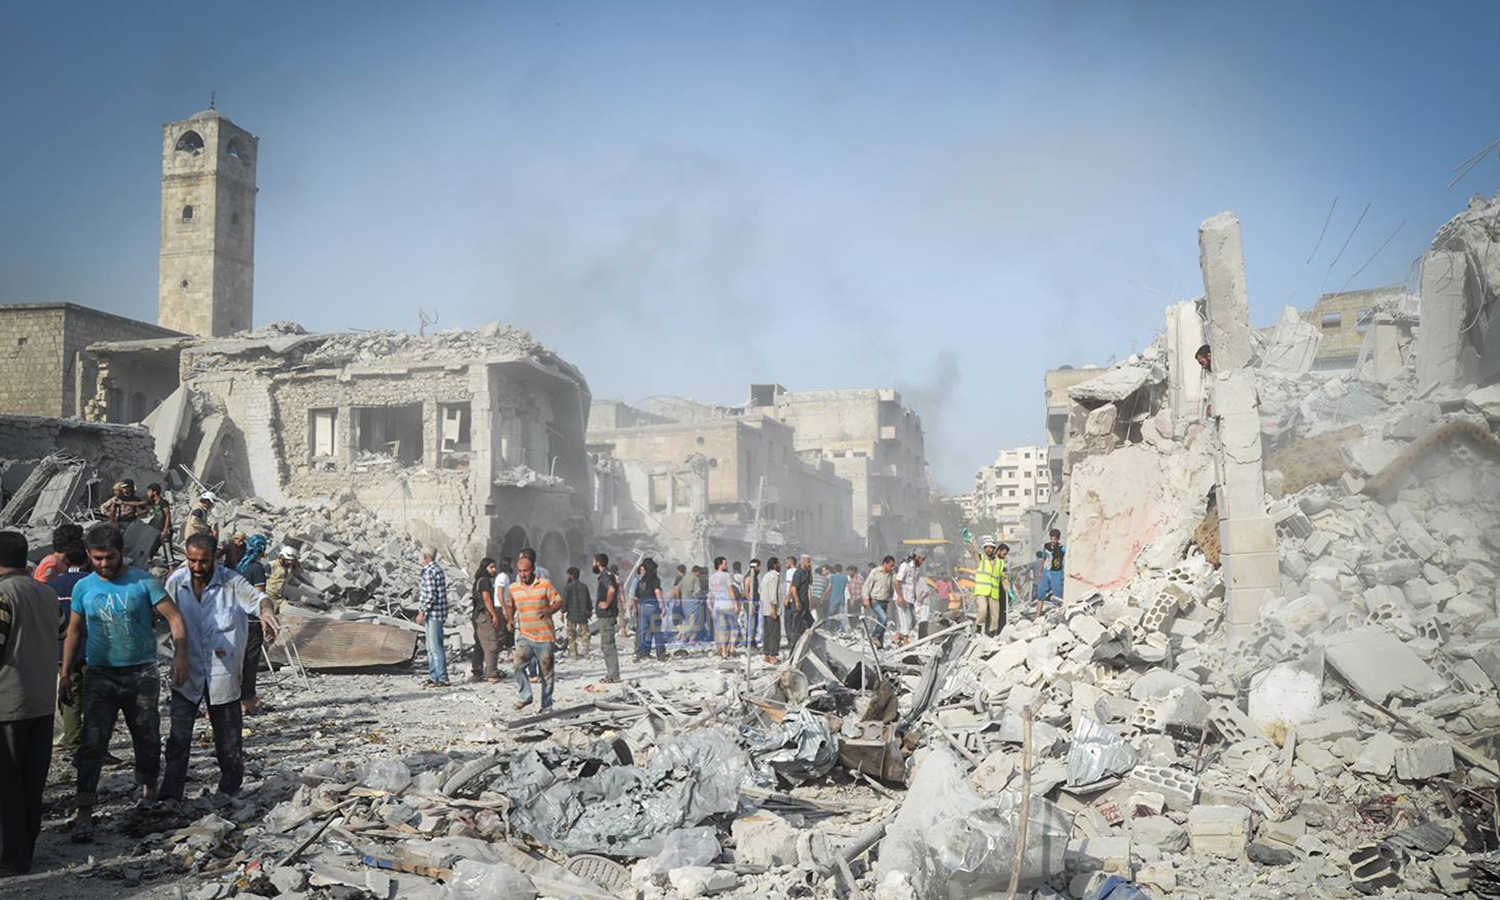 النظام السوري يرتكب مجزرة في أريحا ويقتل 11 مواطنا سوريا بينهم 4 أطفال في أثناء اجتماعات اللجنة الدستورية، وصمت مخجل من قبل الأمم المتحدة